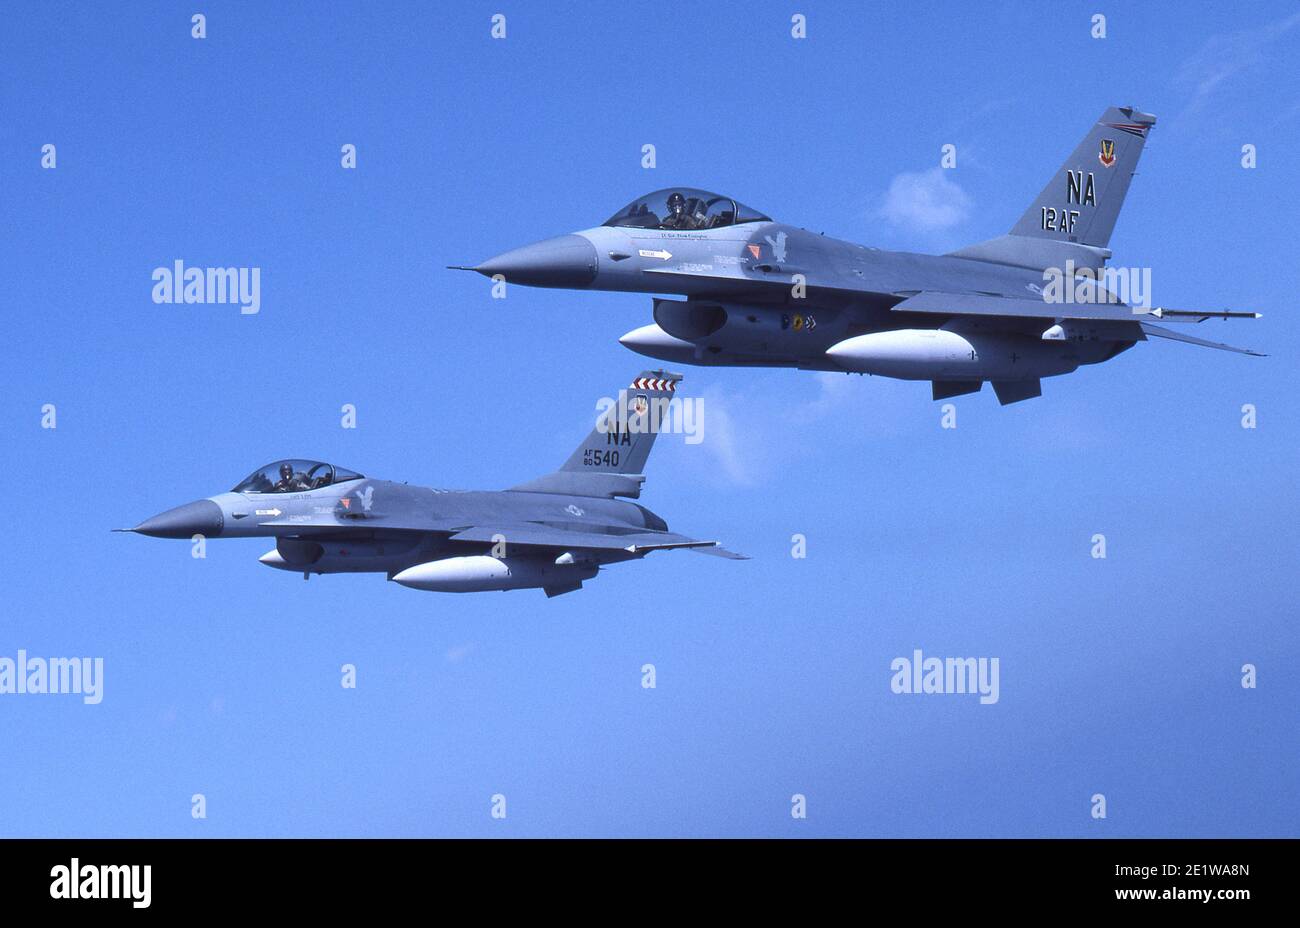 General Dynamics F-16 Fighting Falcon États-Unis chasseur toutes saisons. Également plus communément appelé Viper. Banque D'Images